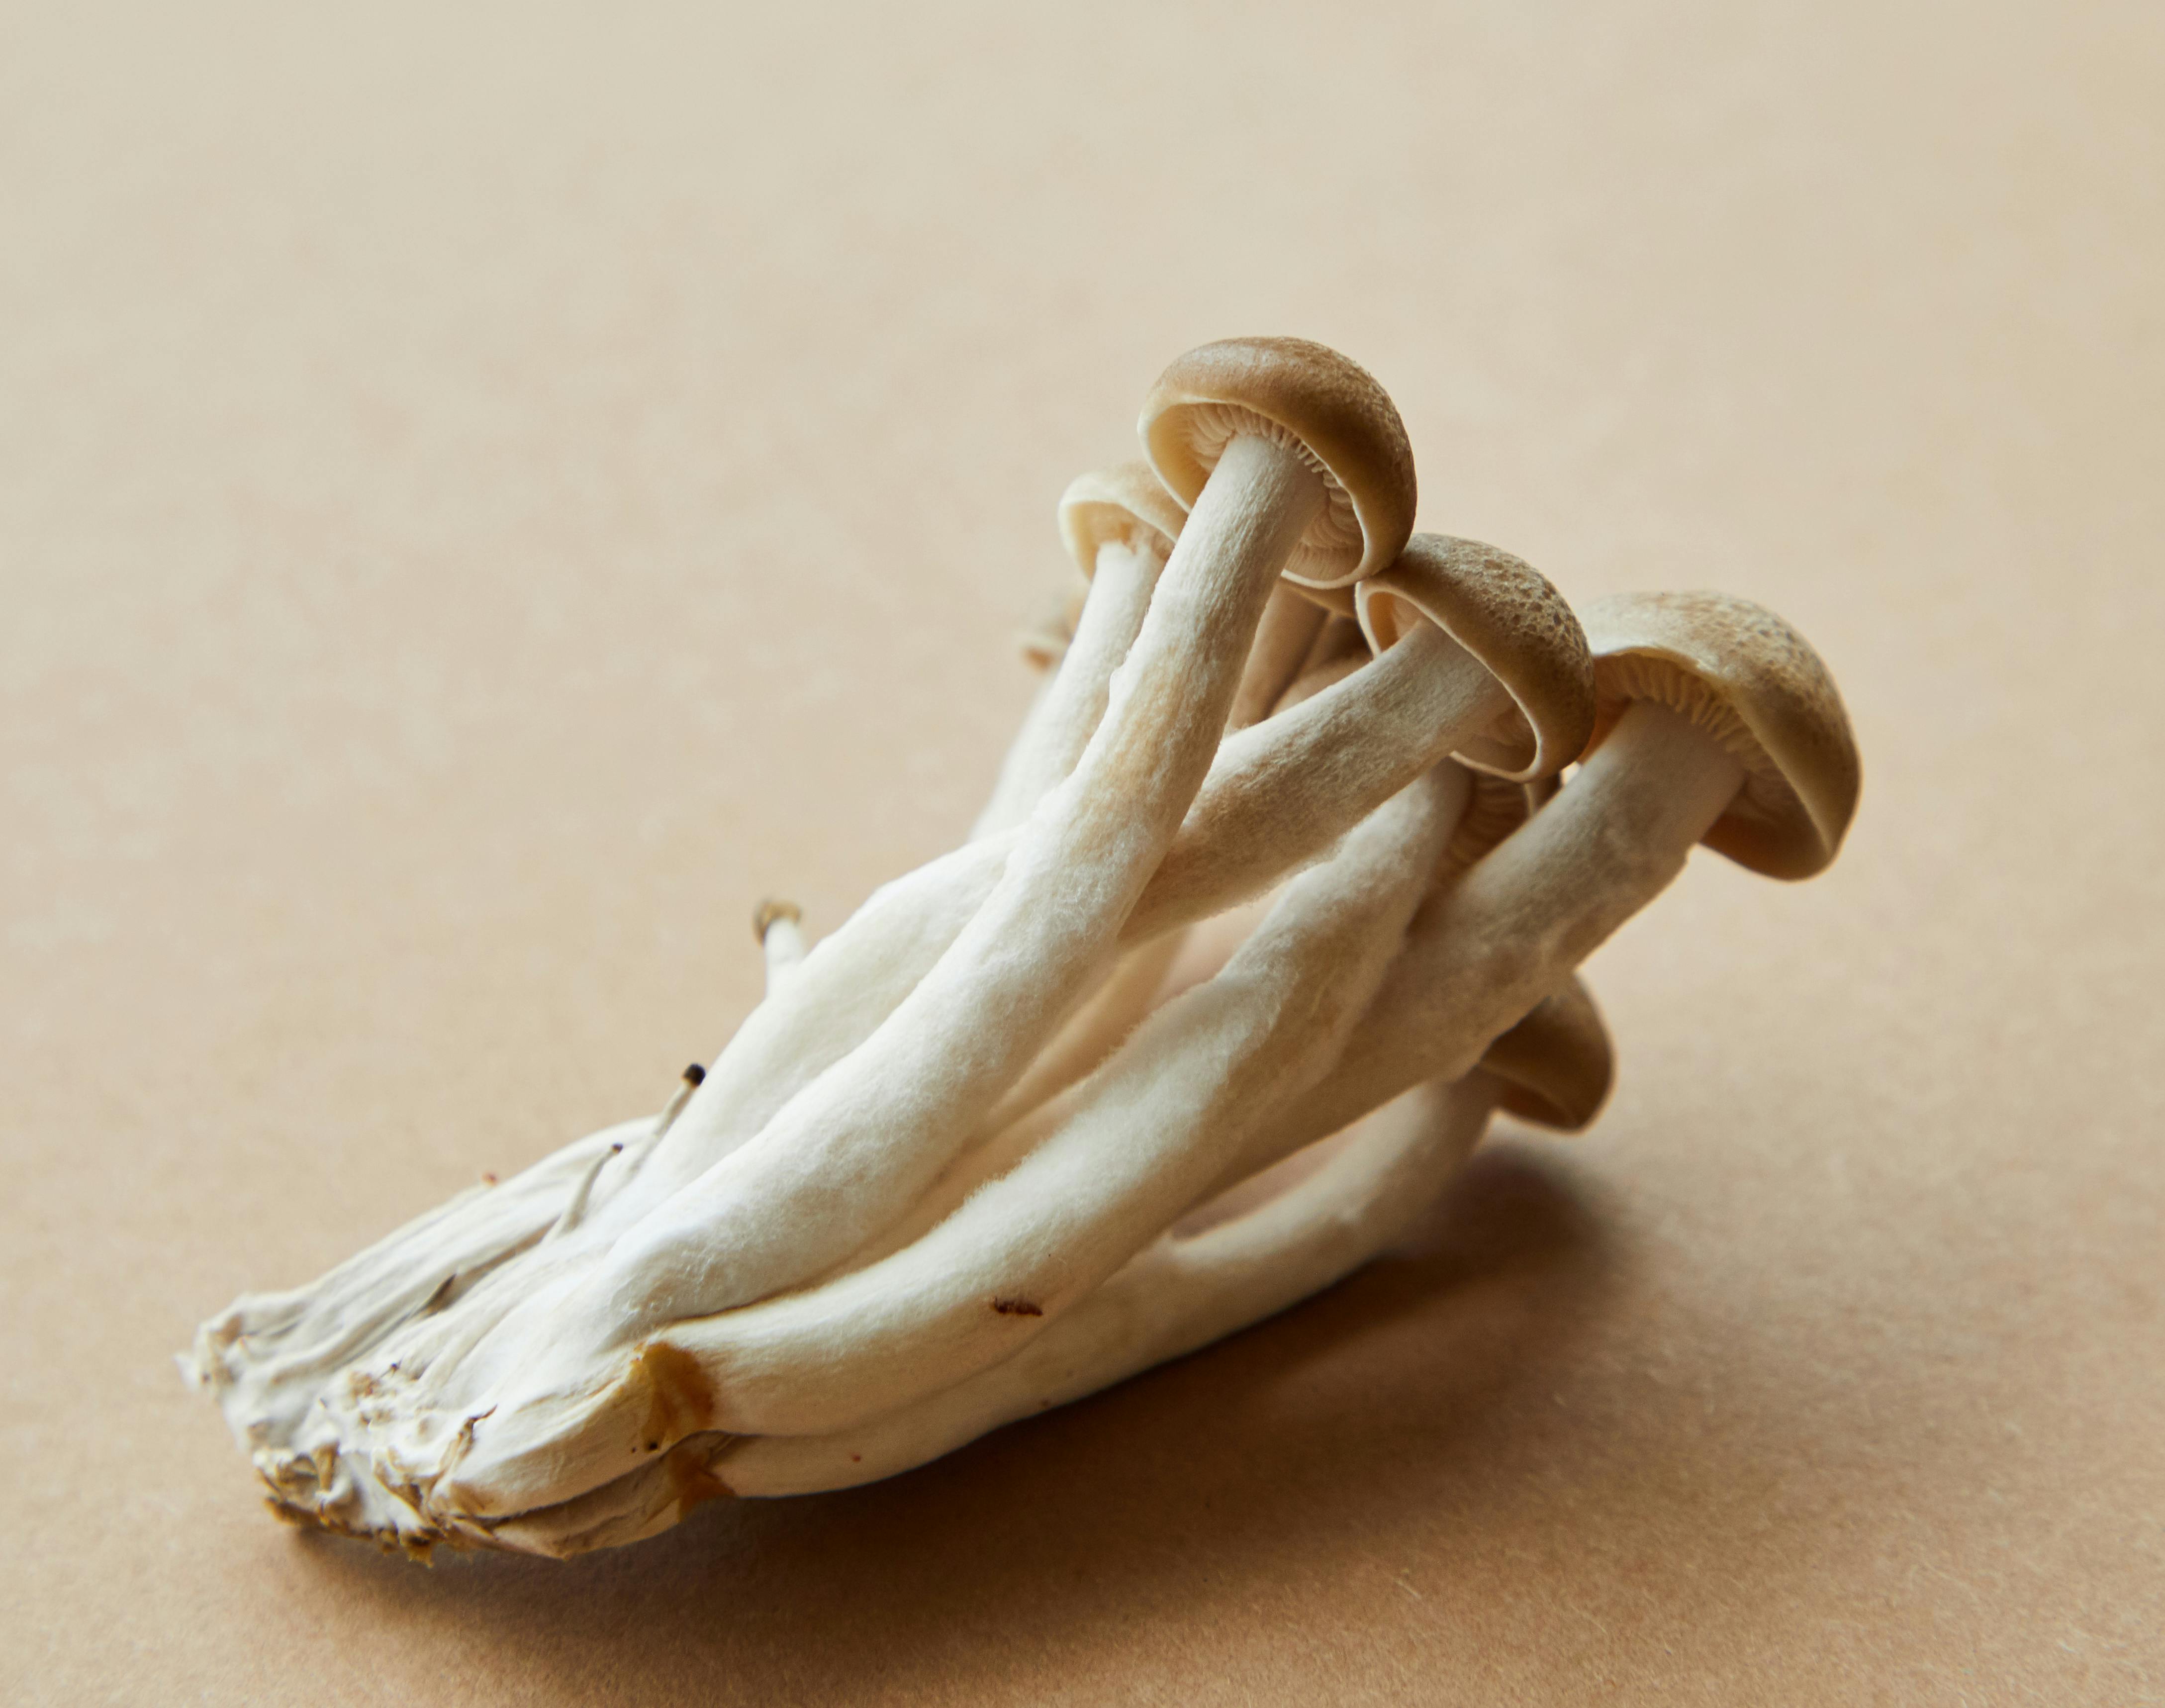 Psilocybin mushrooms (magic mushrooms)